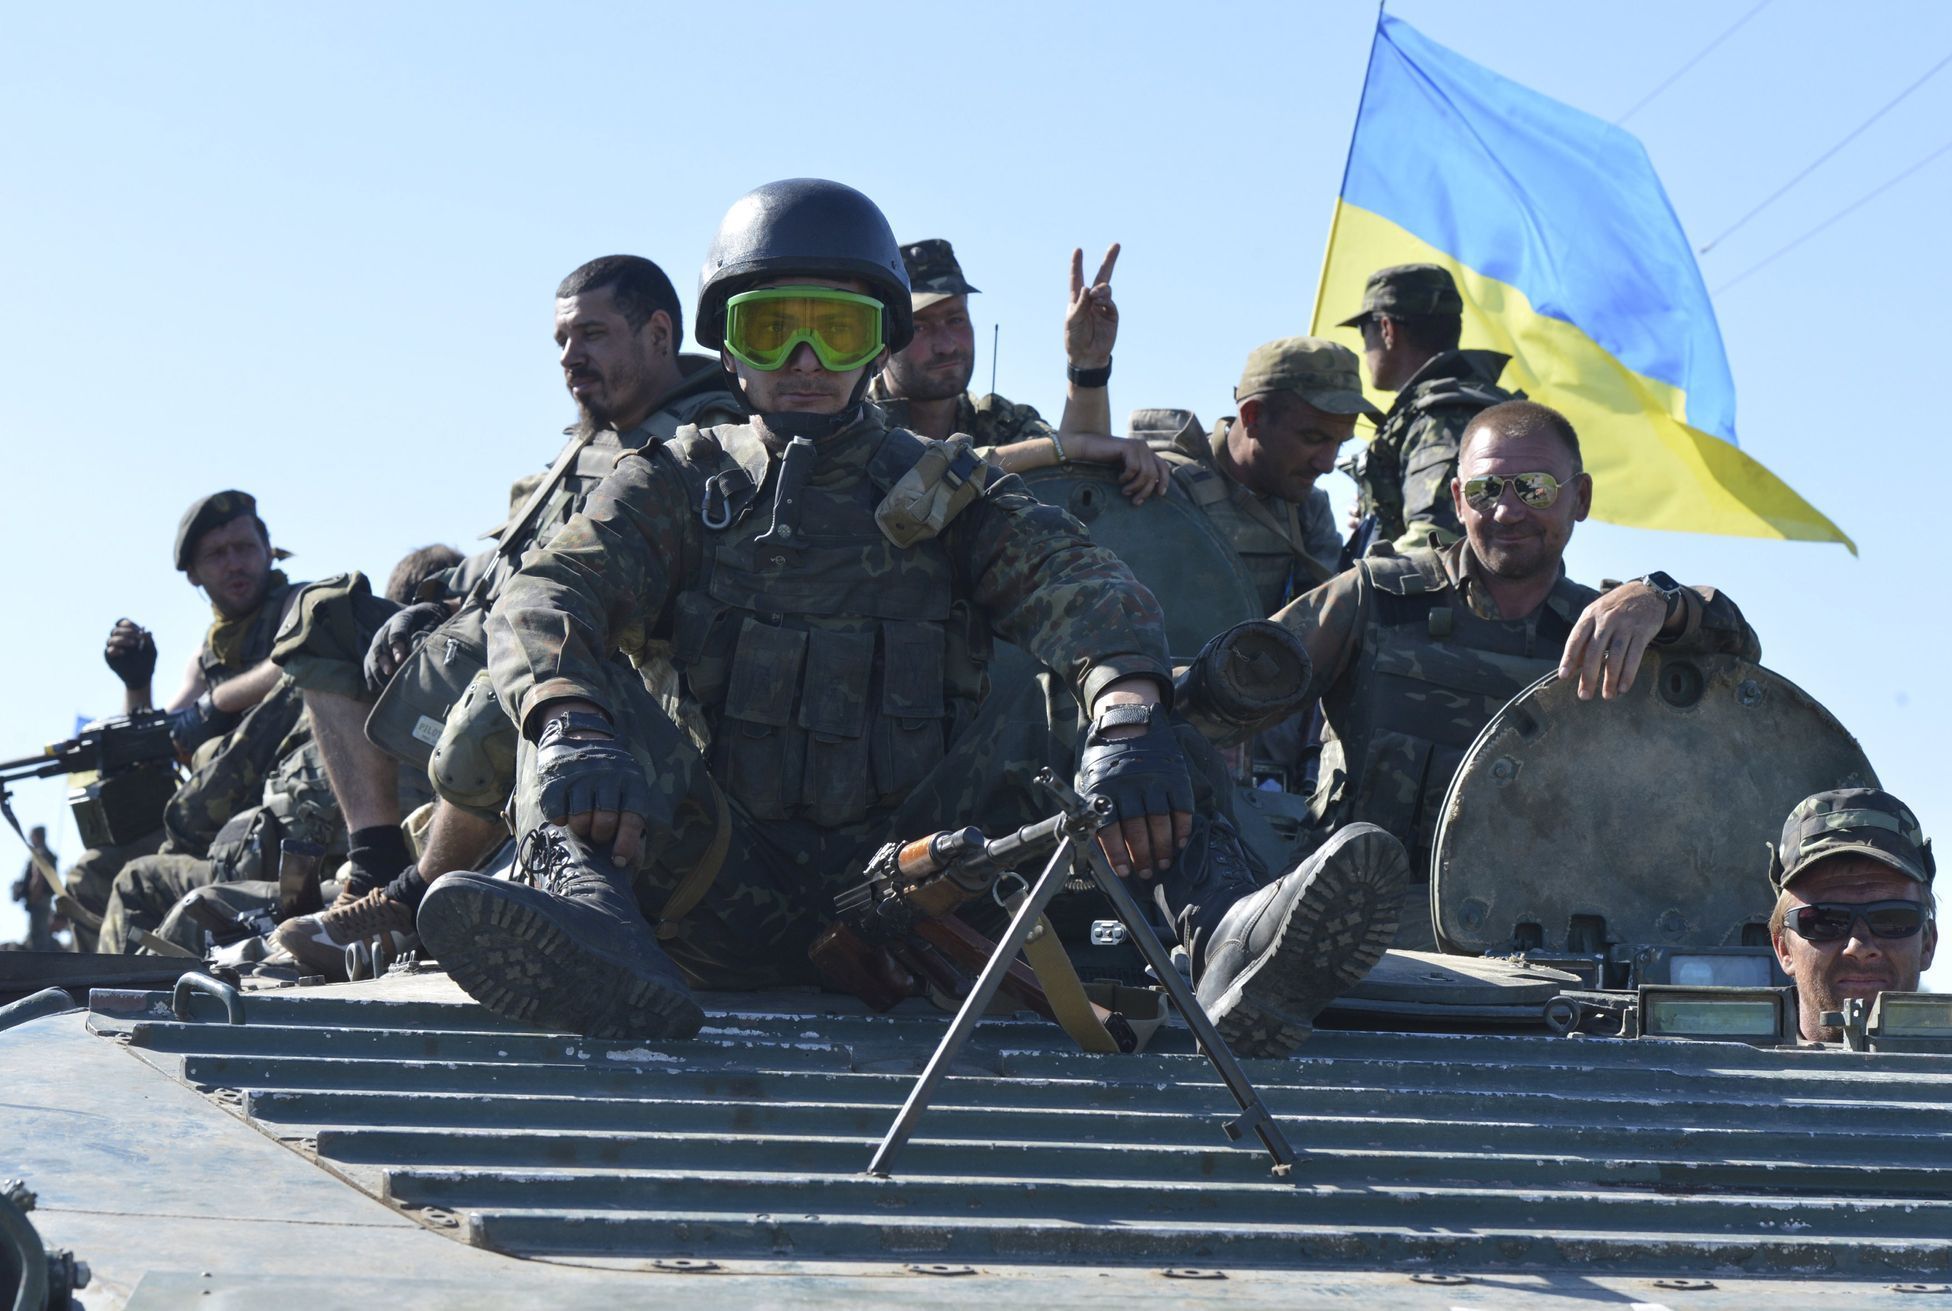 Ukrajina - armáda - Vydrodžennja